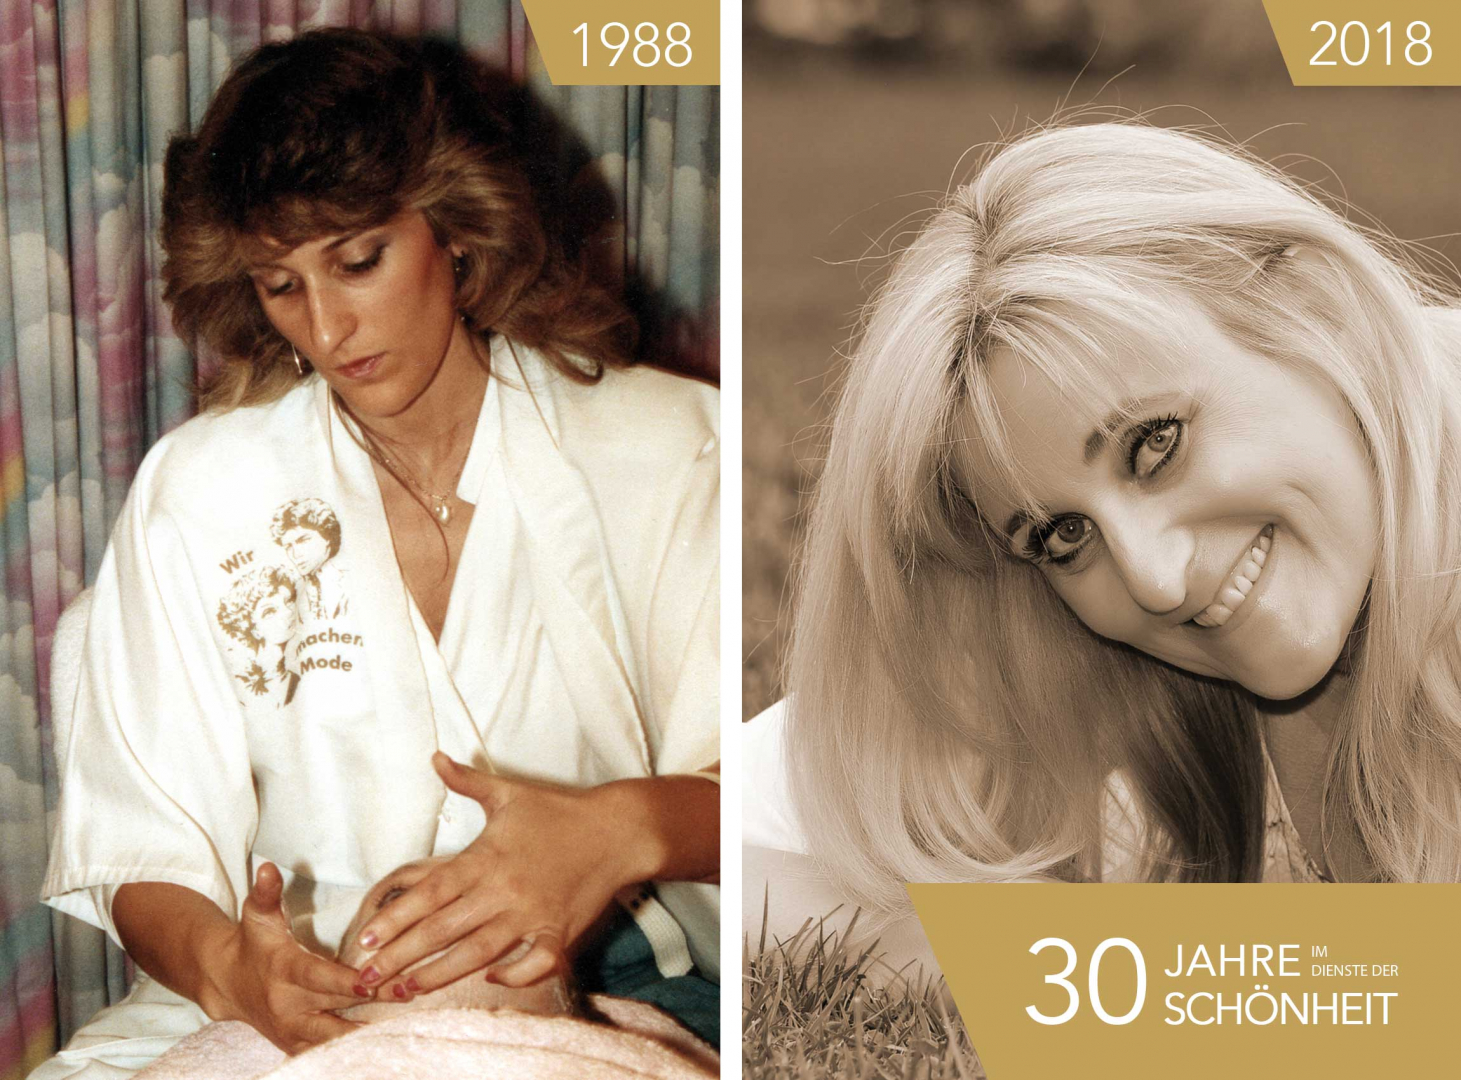 1988 eröffnete Andrea Schneider in Worms-Neuhausen ihr Kosmetik-Institut, was mit zwei Kindern eine große Herausforderung darstellte.